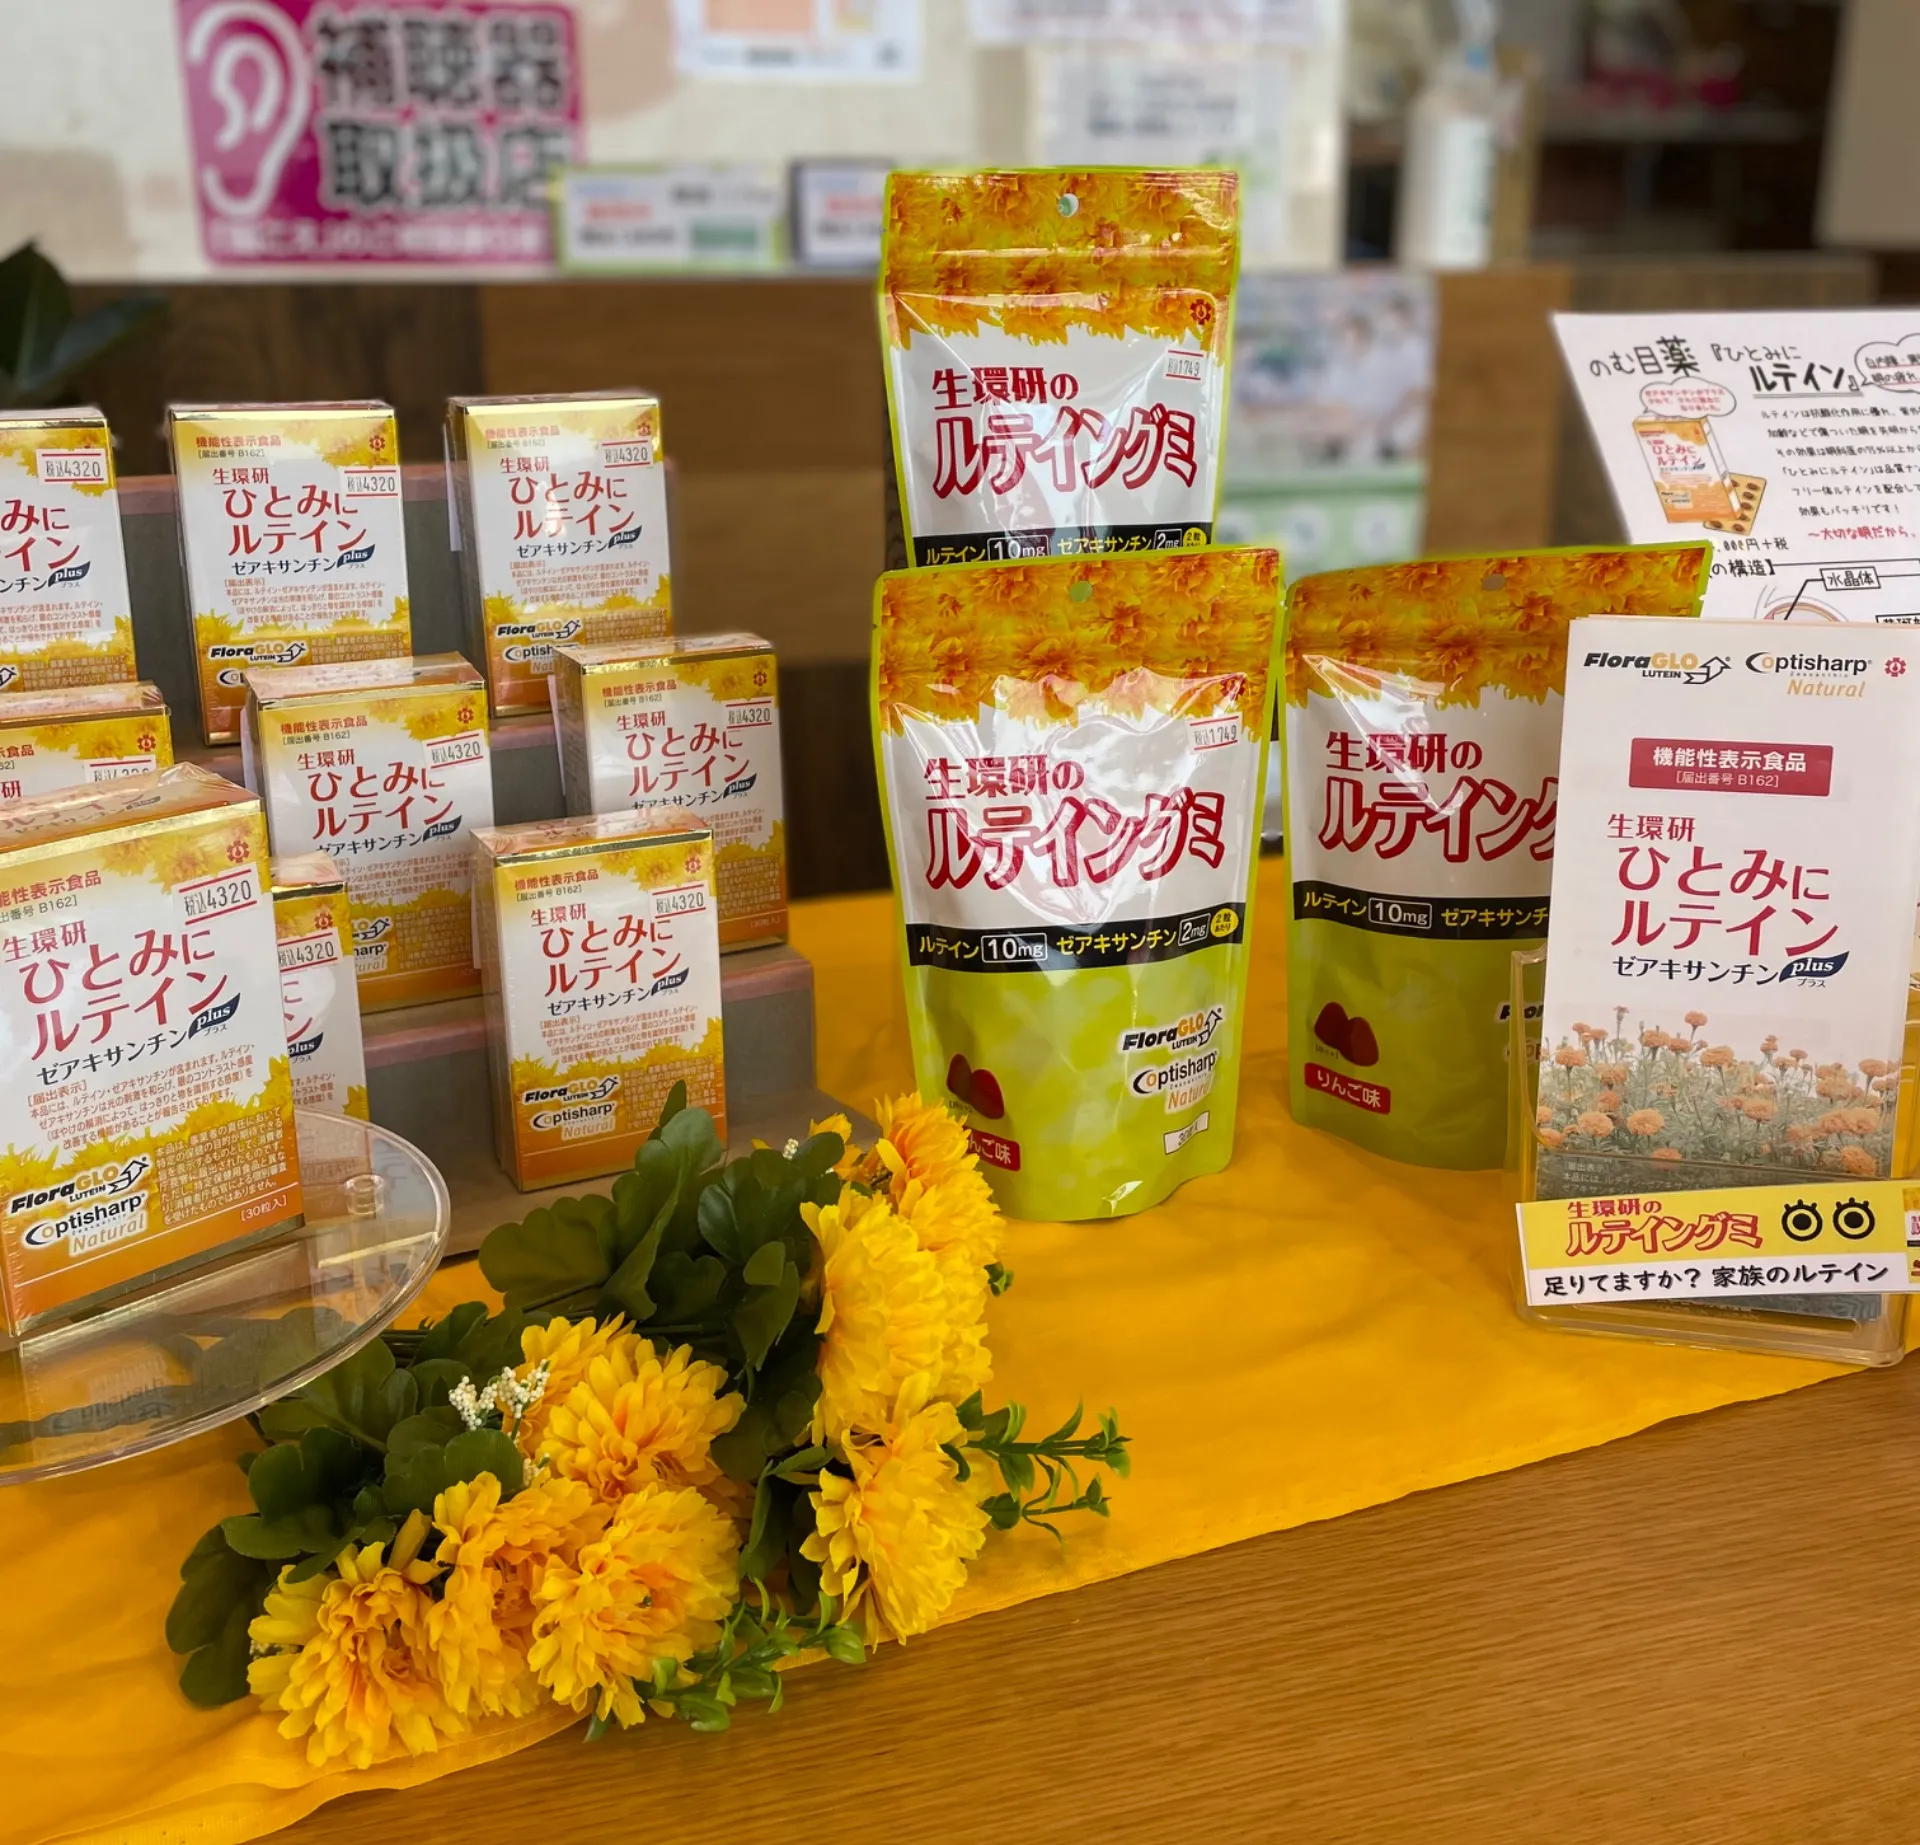 神戸と三木にある薬局のキャンペーンのお知らせです。